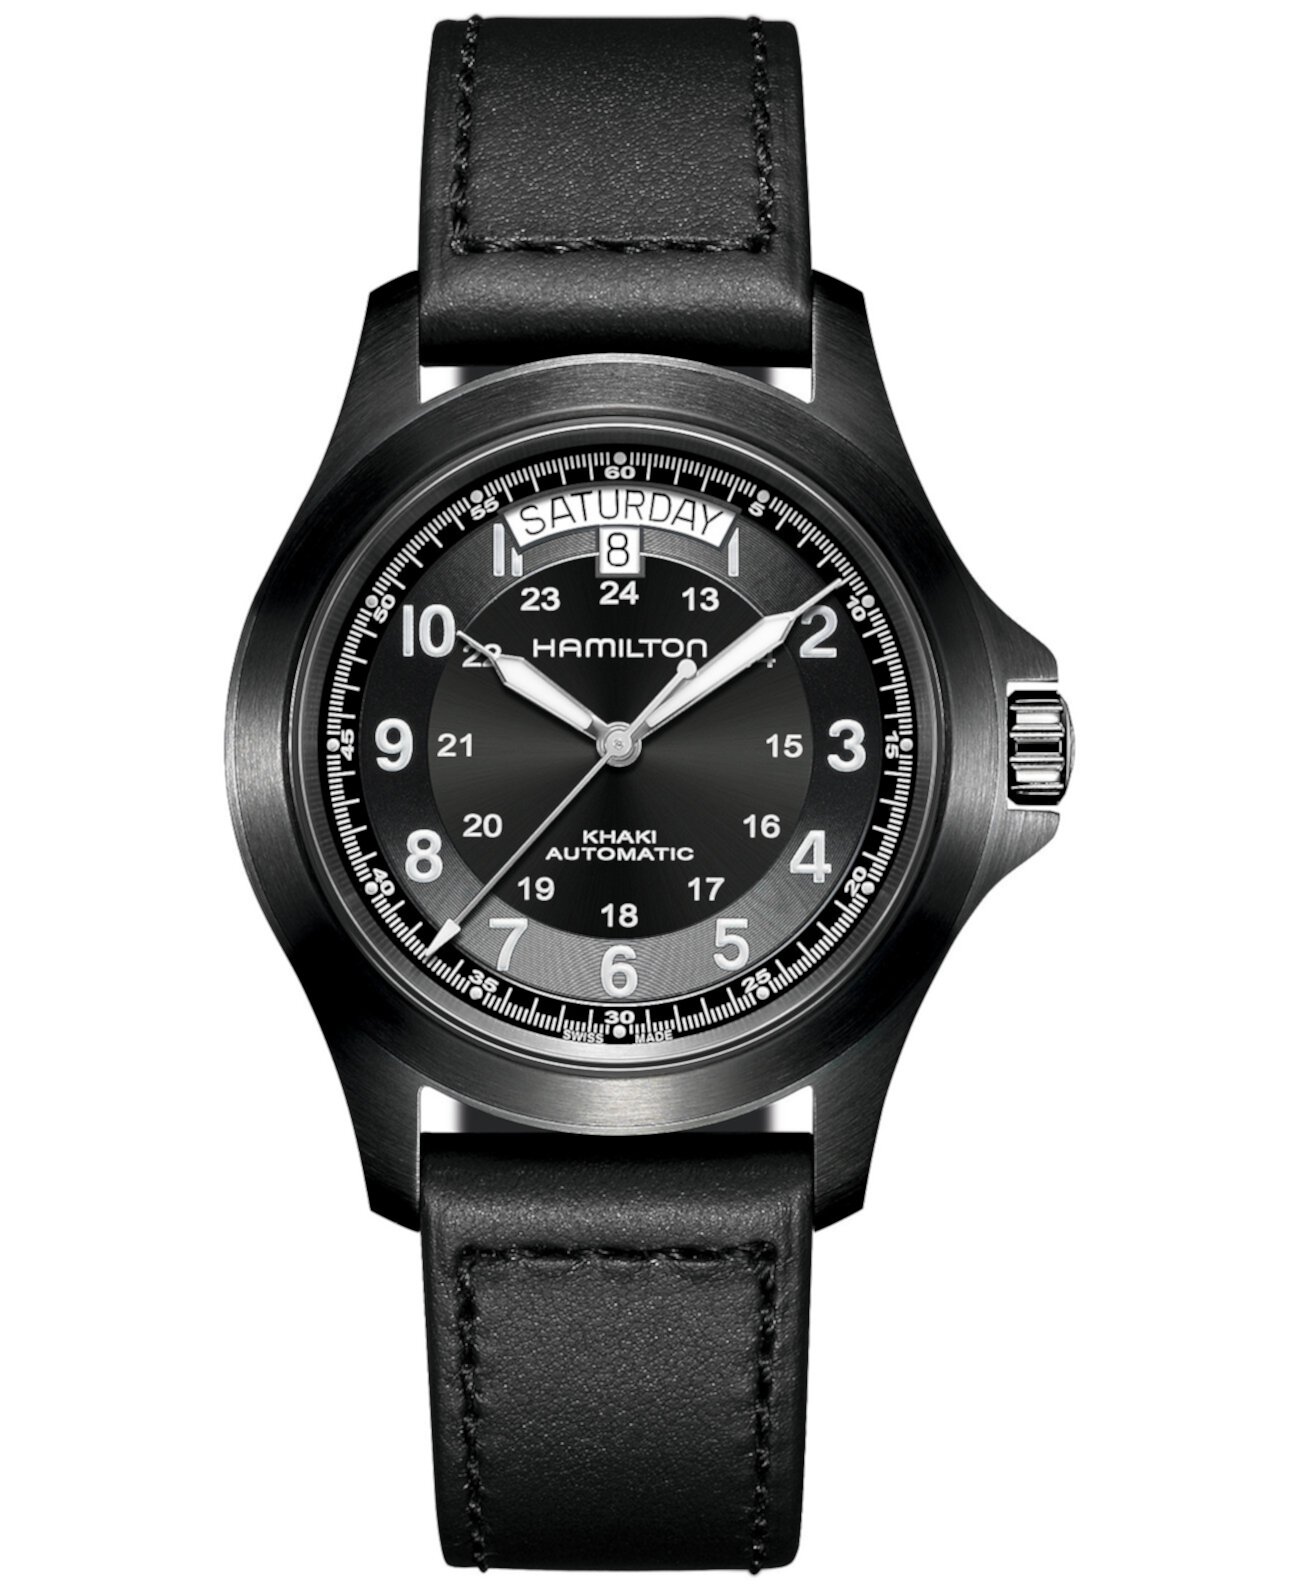 Мужские швейцарские автоматические часы цвета хаки Field King с черным кожаным ремешком 40 мм Hamilton